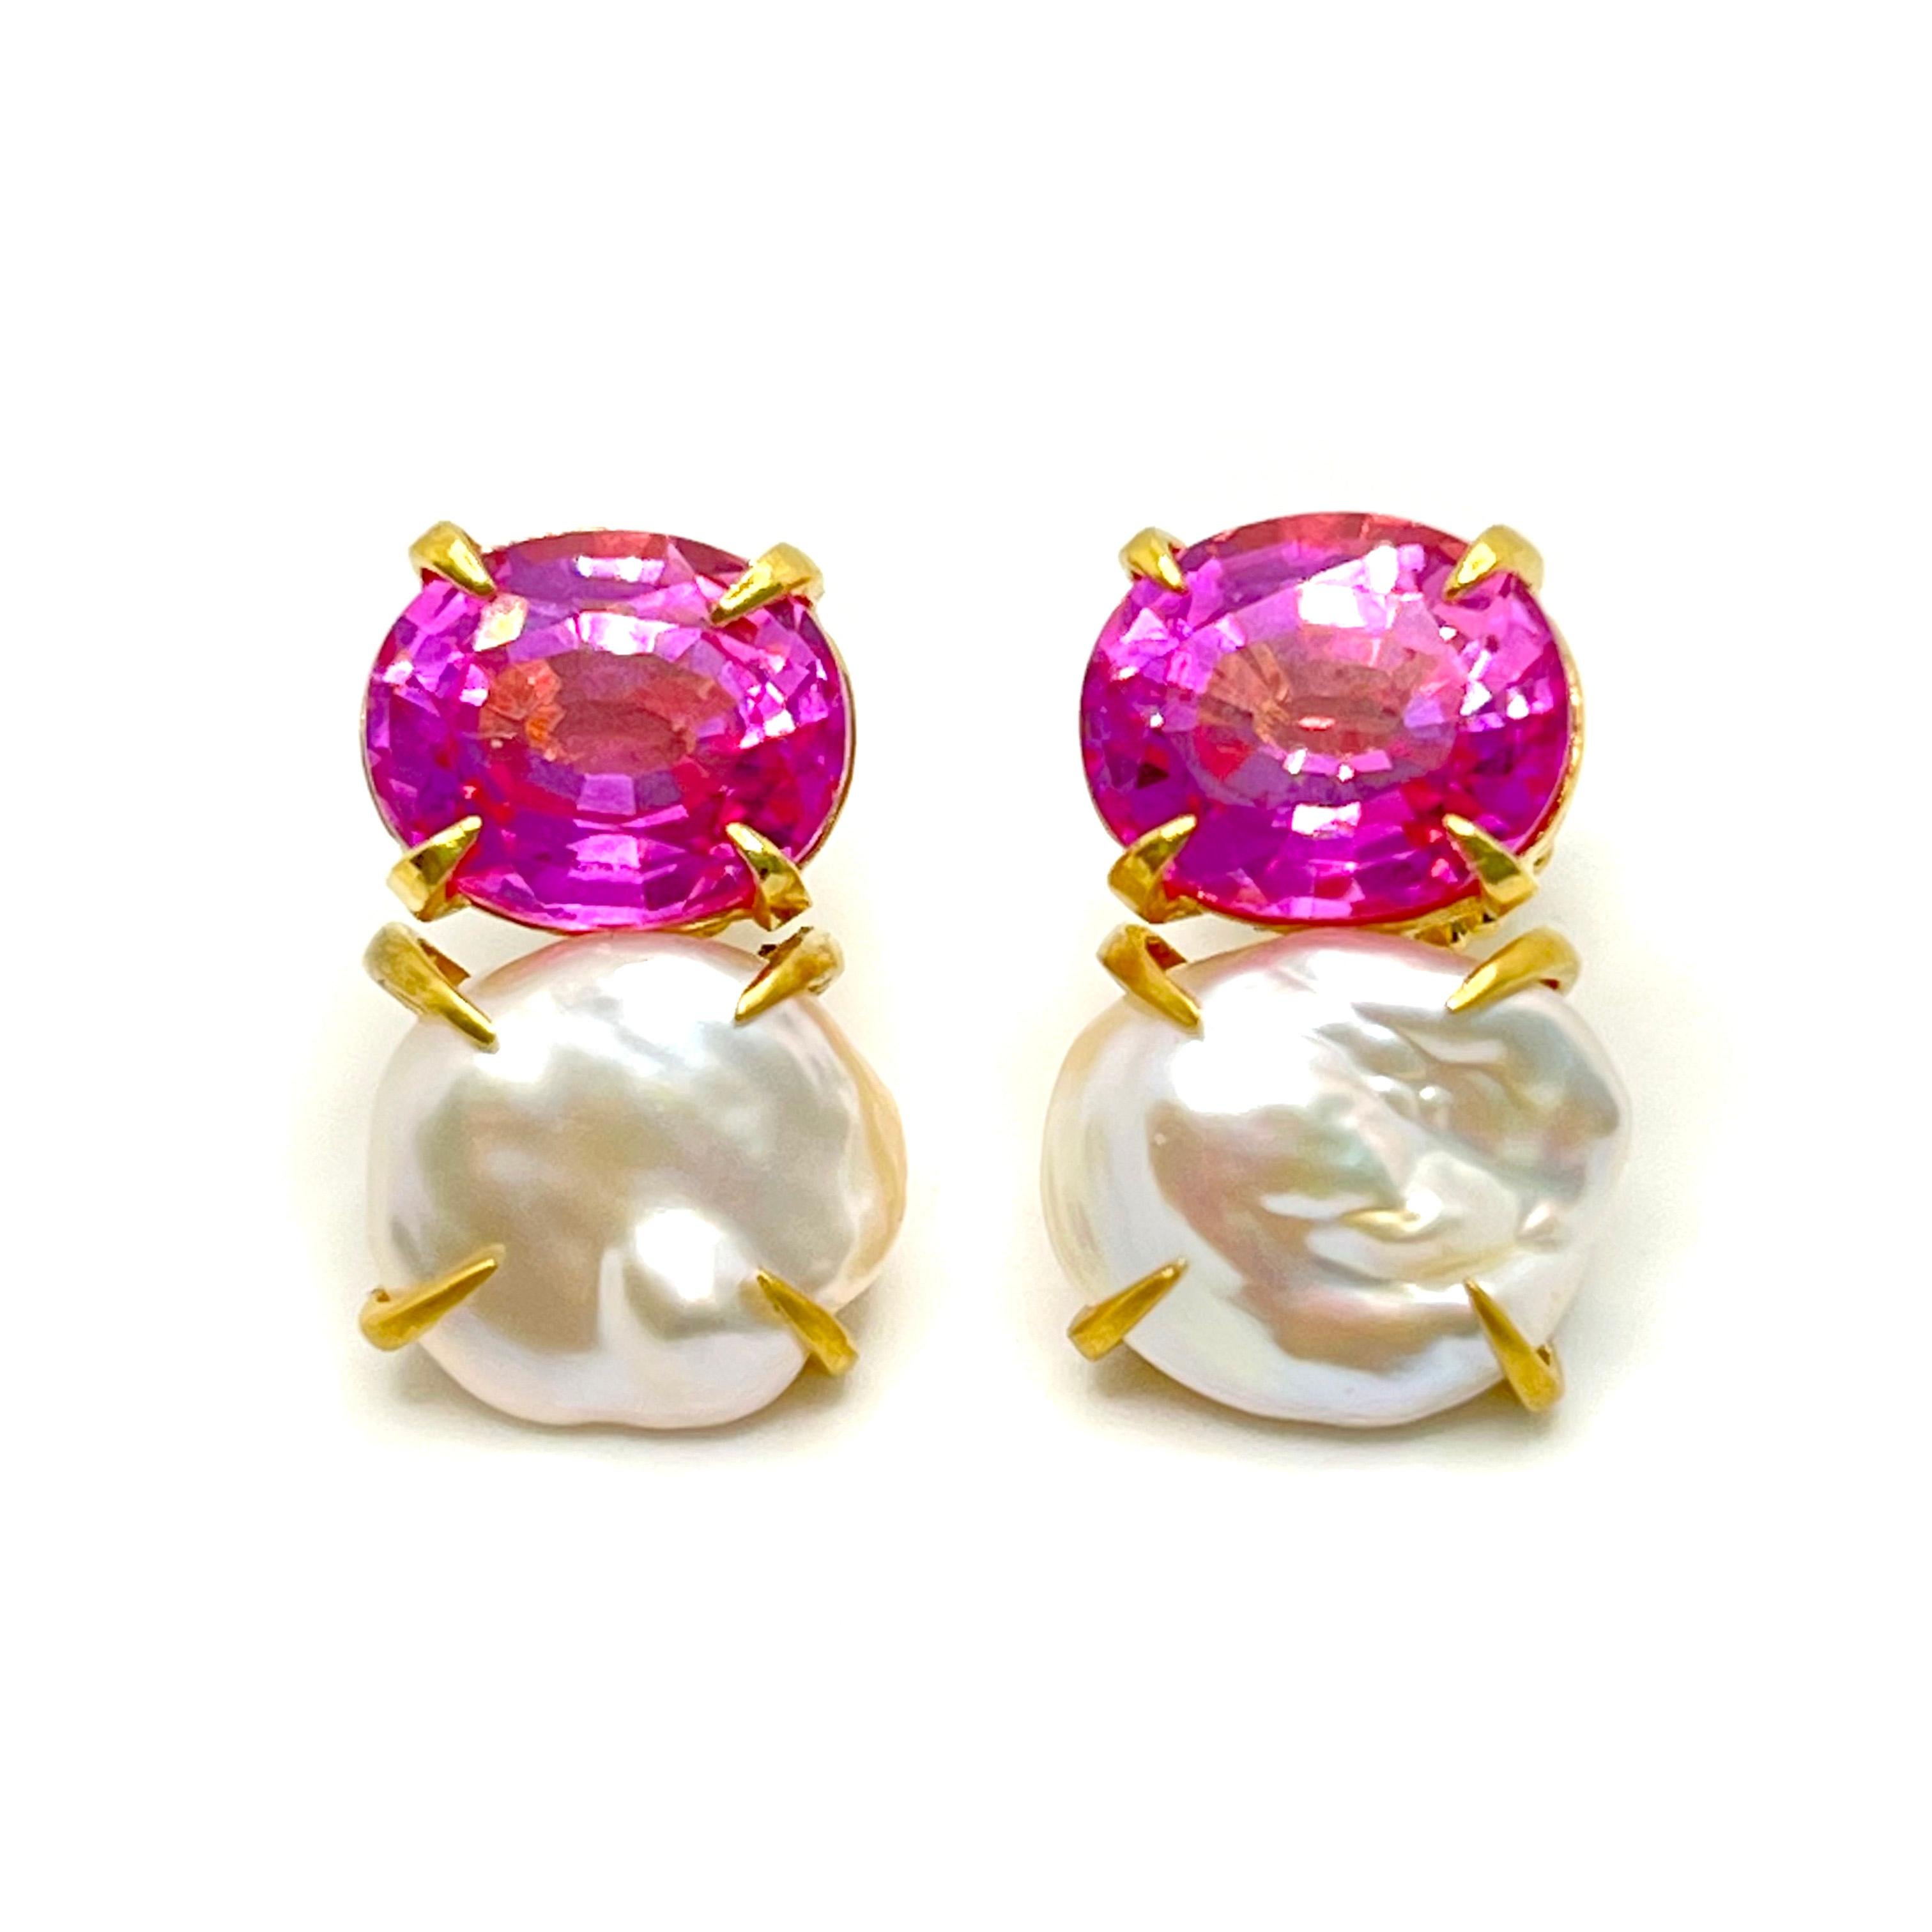 Bijoux Num Oval Rosa Saphir und Keishi Perle Vermeil Ohrringe. 

Das atemberaubende Paar Ohrringe besteht aus einem wunderschönen, im Labor hergestellten rosa Saphir und einer glänzenden japanischen Keishi-Zuchtperle, die mit 18-karätigem Gold